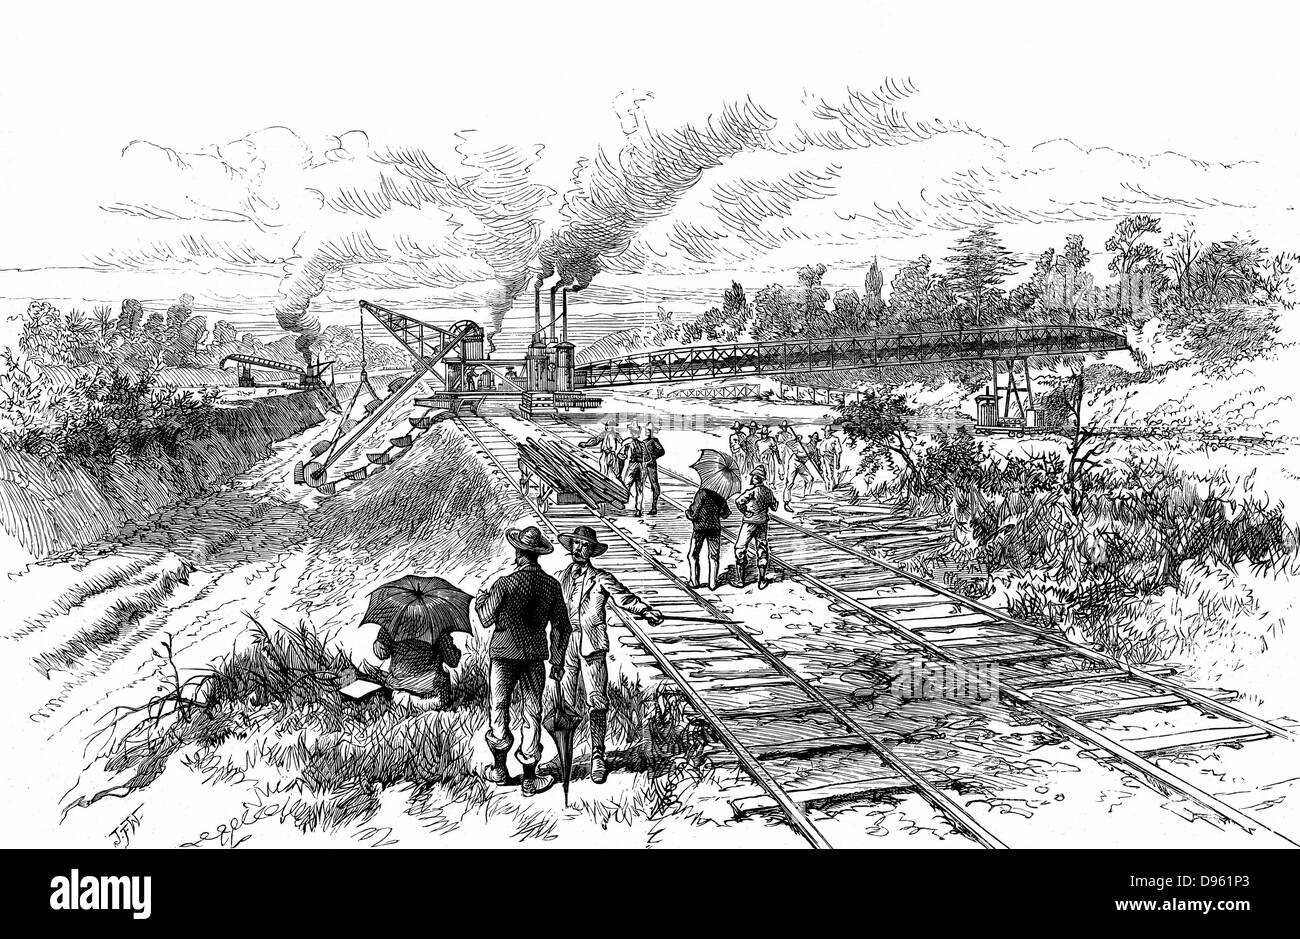 Panamakanal: Aushub mit Dampf betriebene Erde Bagger und Erde Transporter bei Tabemilla während der De Lesseps versuchen, den Panama Kanal zu graben. Holzstich, 1888 Stockfoto